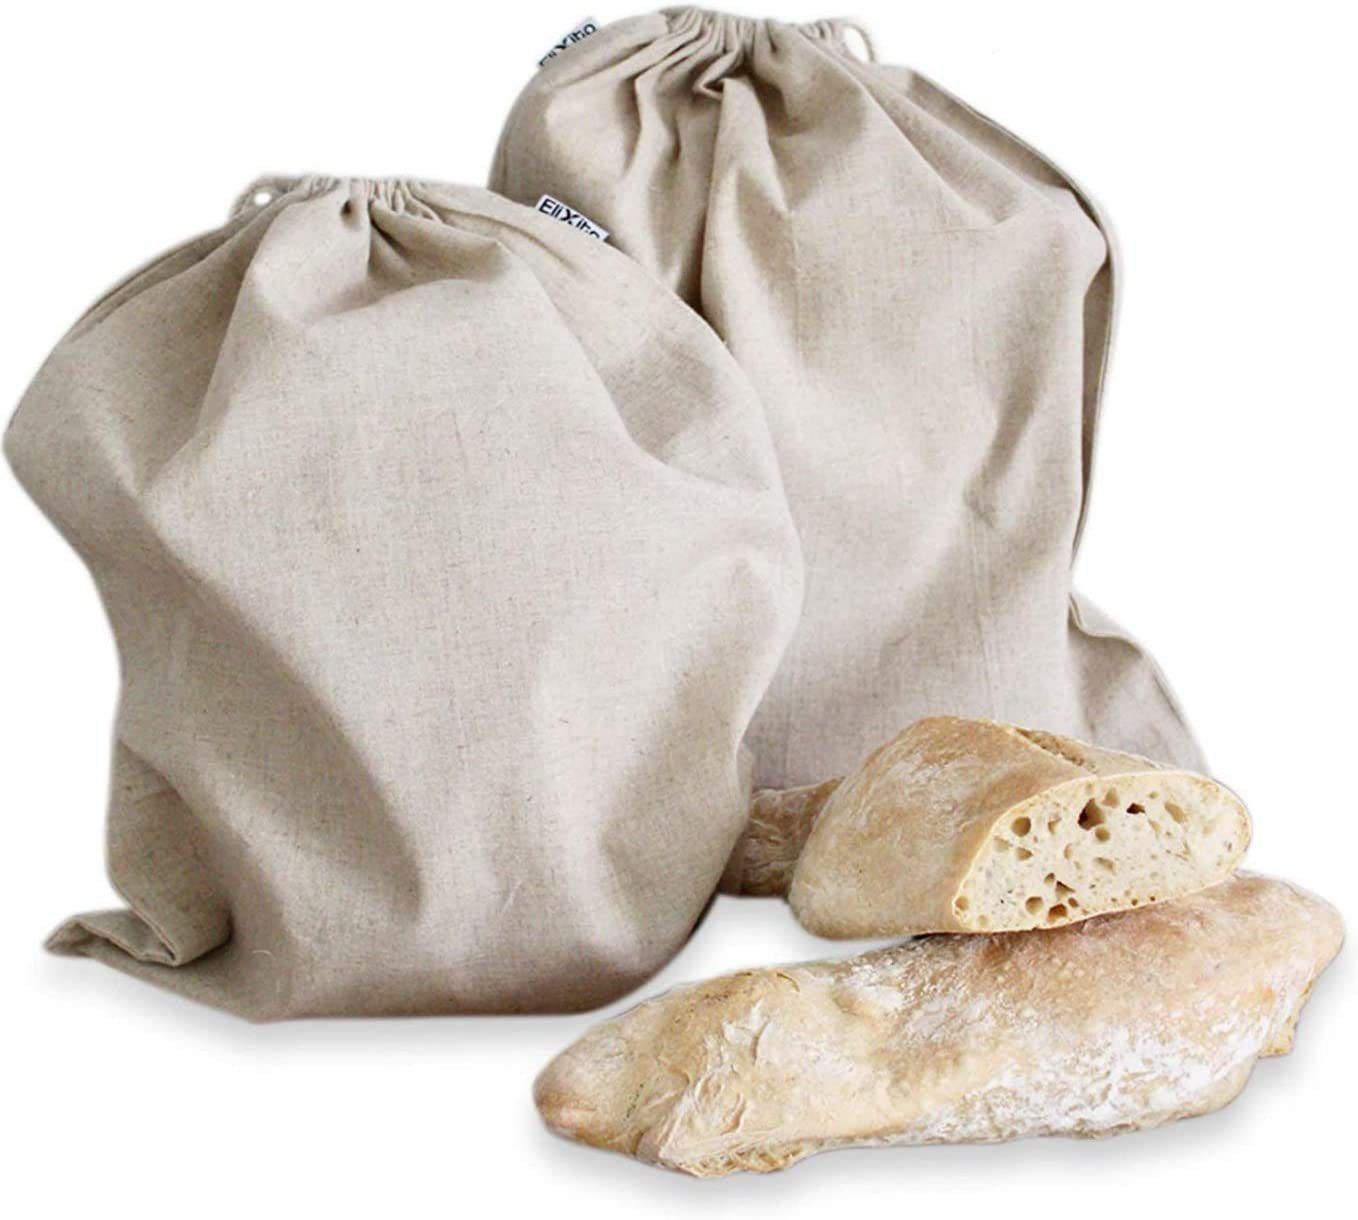 EliXito Brottasche Brotbeutel 100% Leinen cm Obst- - Lebensmittel (2-tlg), und x Brotsack, 30 - Luftdurchlässig Nachhaltig Aufbewahrung Gemüsebeutel - Auch 40 Frischhalten